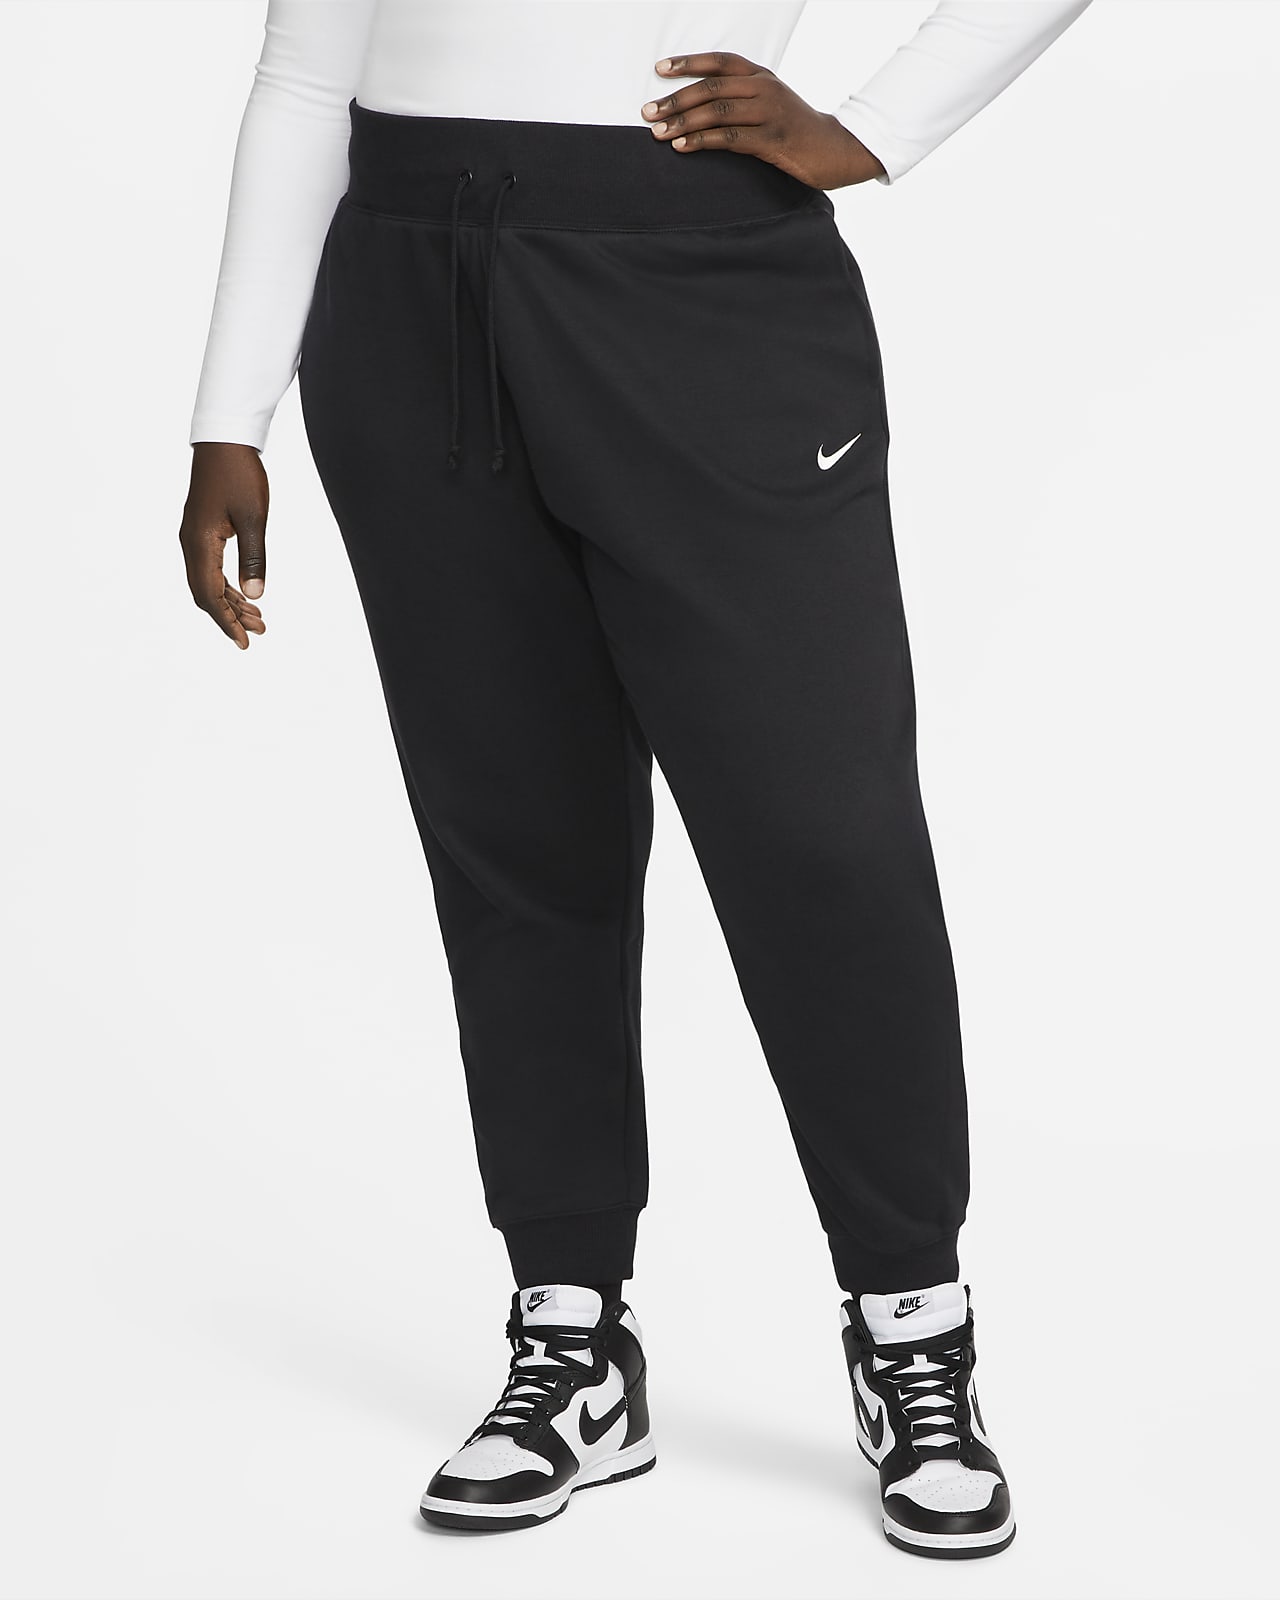 Nike Sportswear Phoenix Fleece Women's High-Waisted Joggers. Nike LU